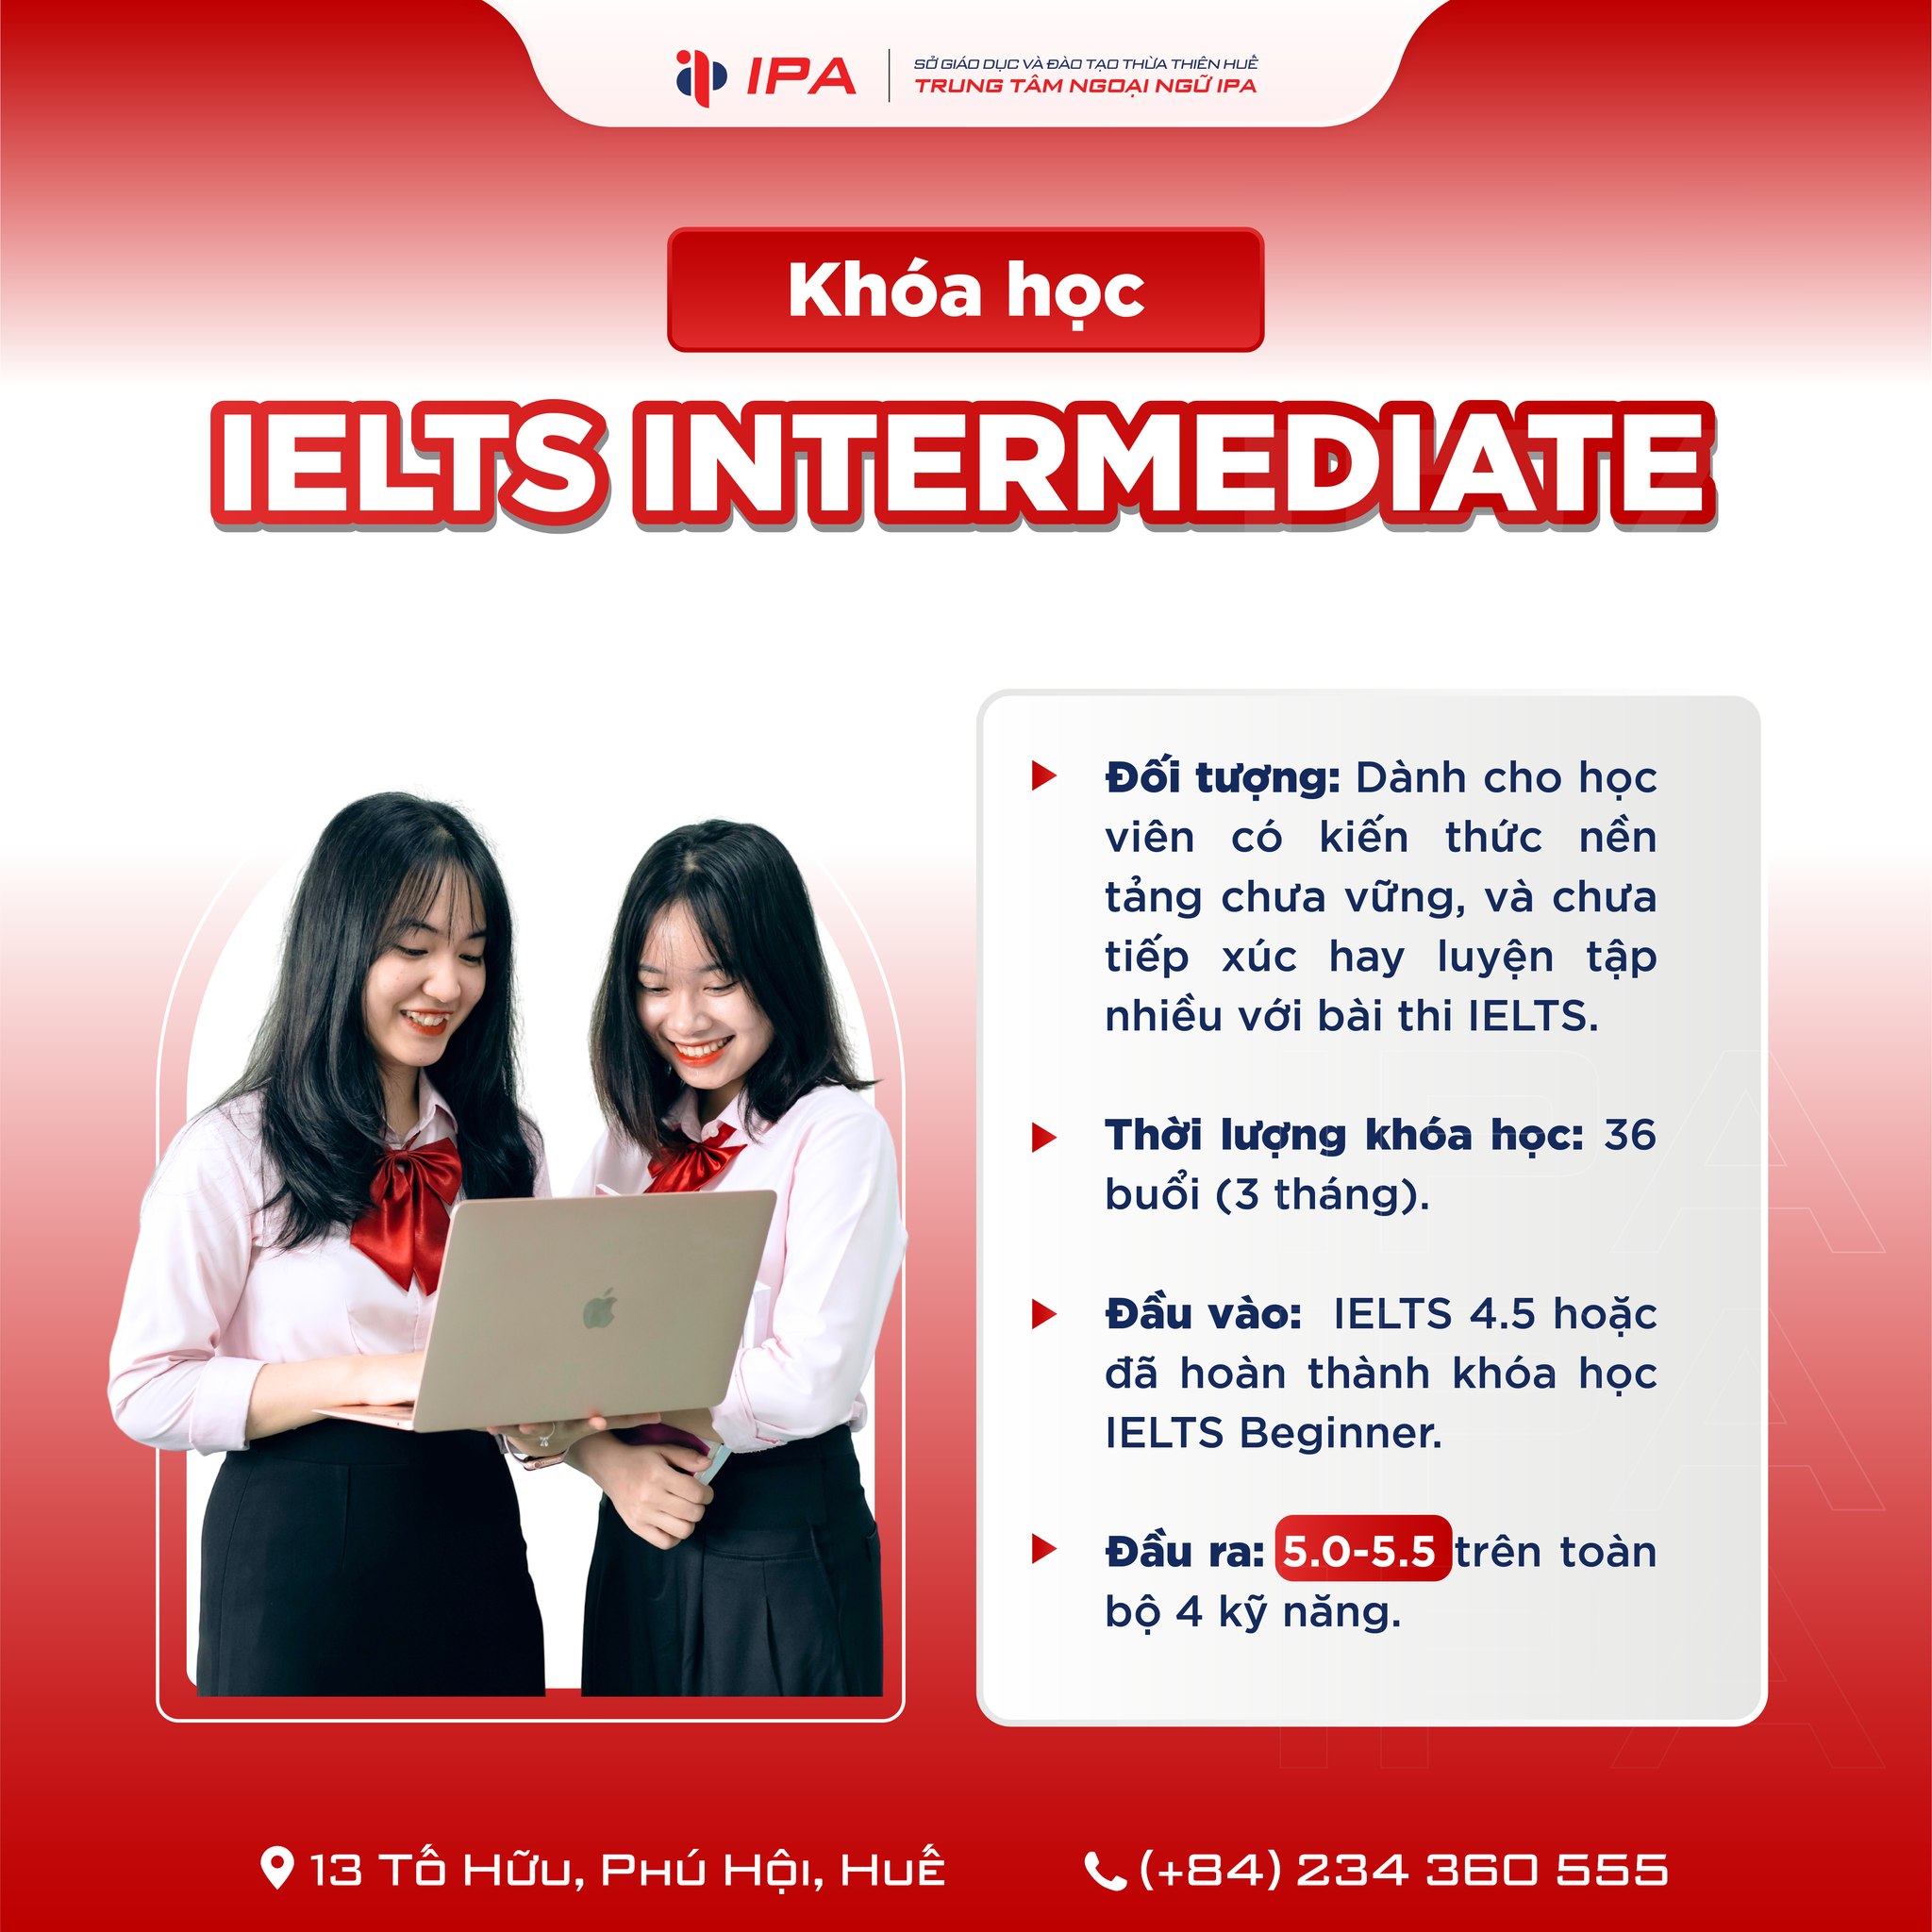 Khóa học IELTS Intermediate  được thiết kế dành cho những học viên có nền tảng tiếng Anh khá tốt, nhưng chưa có cơ hội thực hành nhiều với đề thi IELTS.